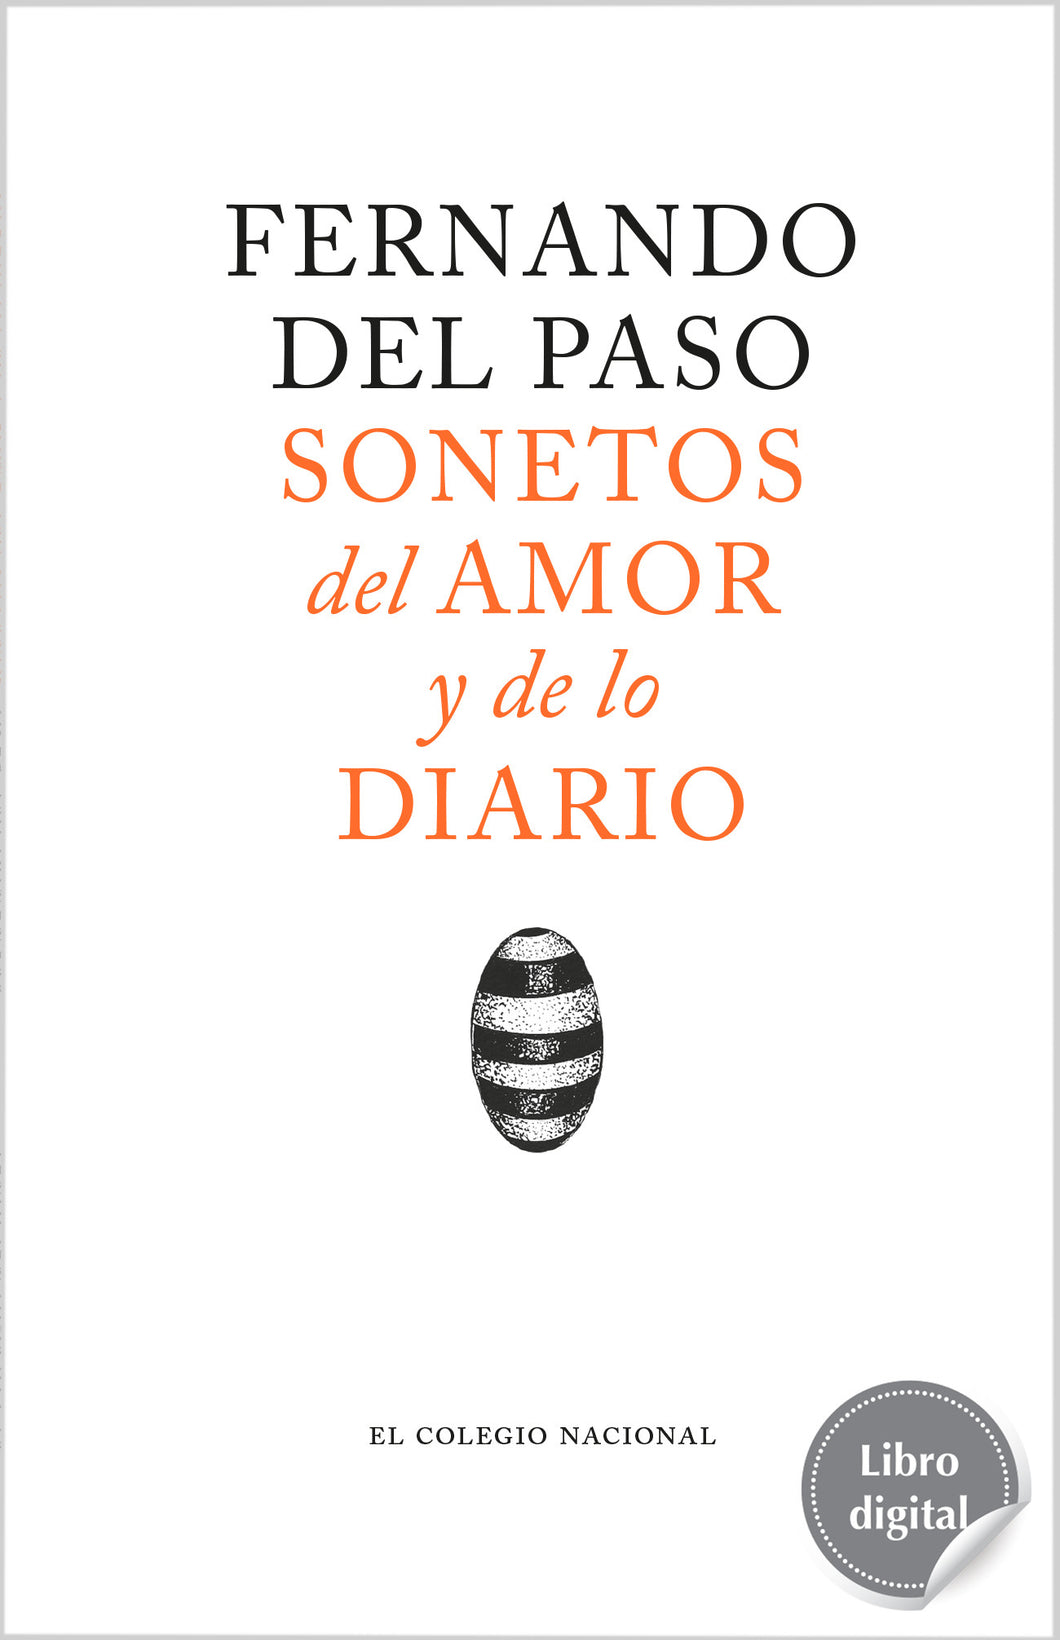 Sonetos del amor y de lo diario de Fernando del Paso, libro digital de El Colegio Nacional, Libros Colnal